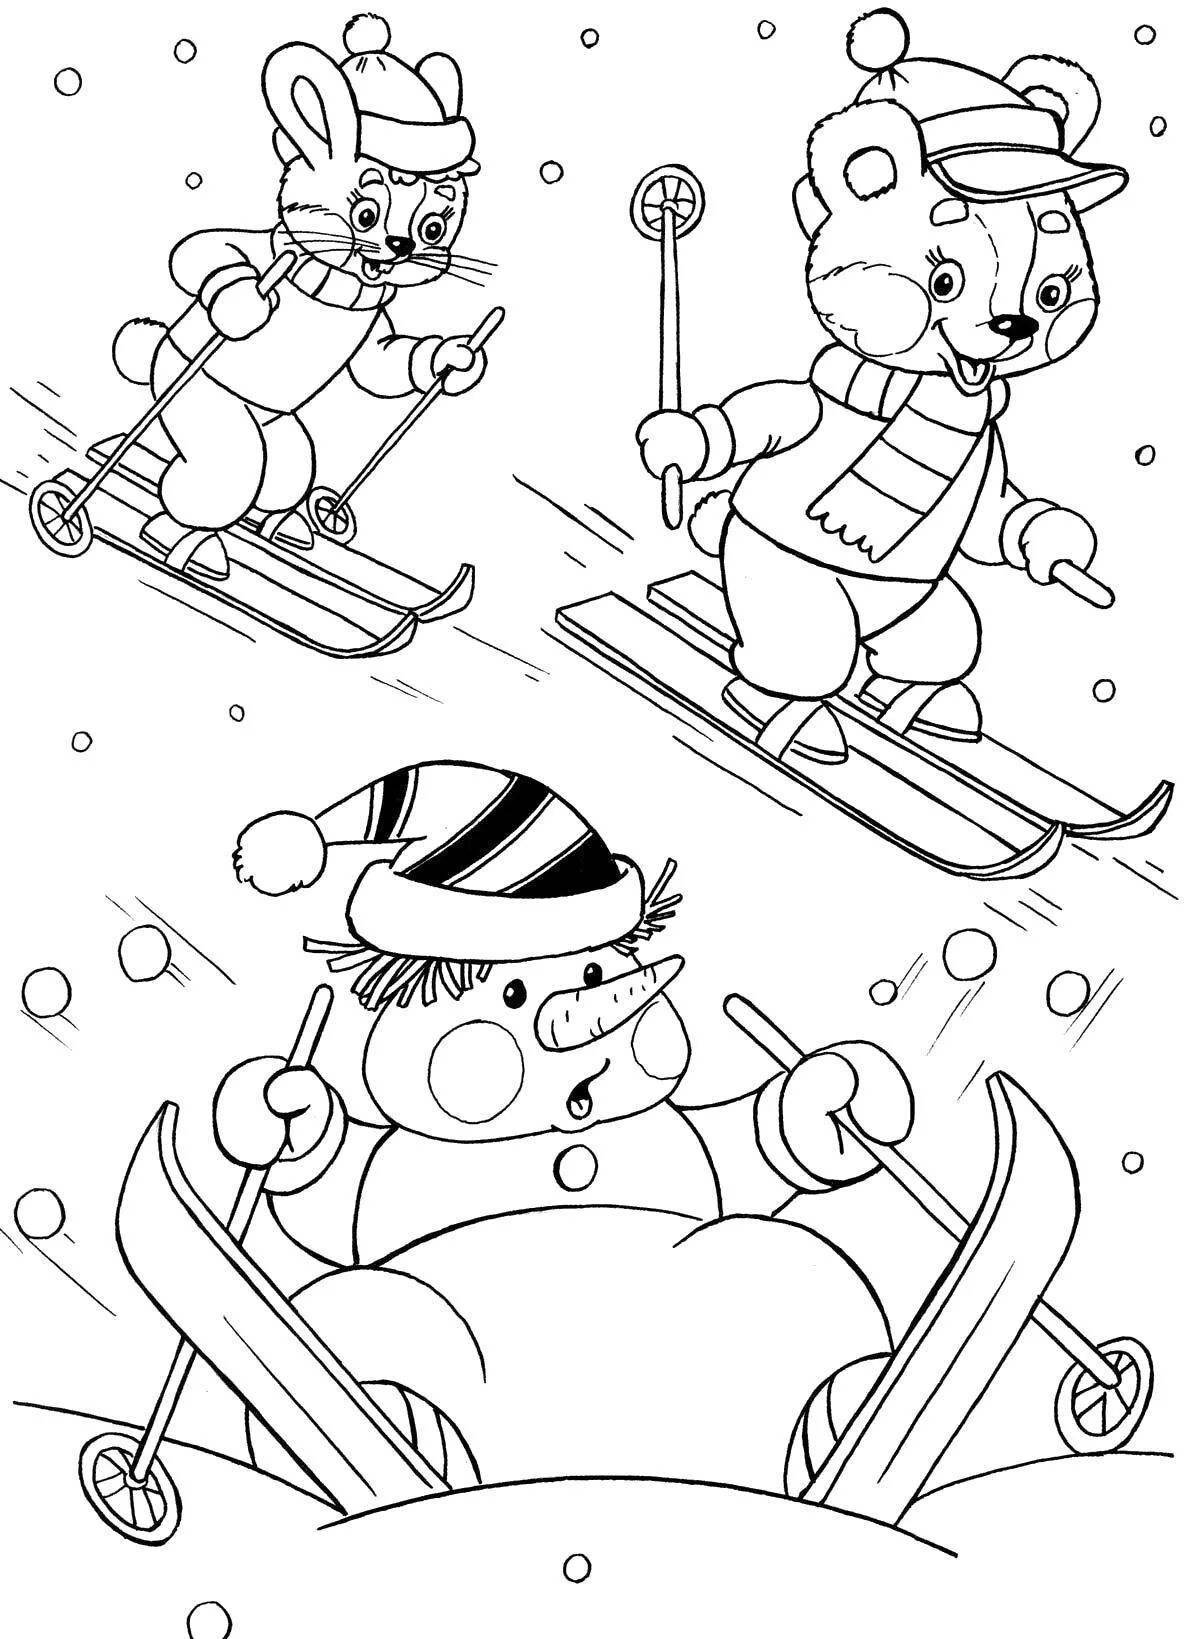 Rampant bear skiing coloring page